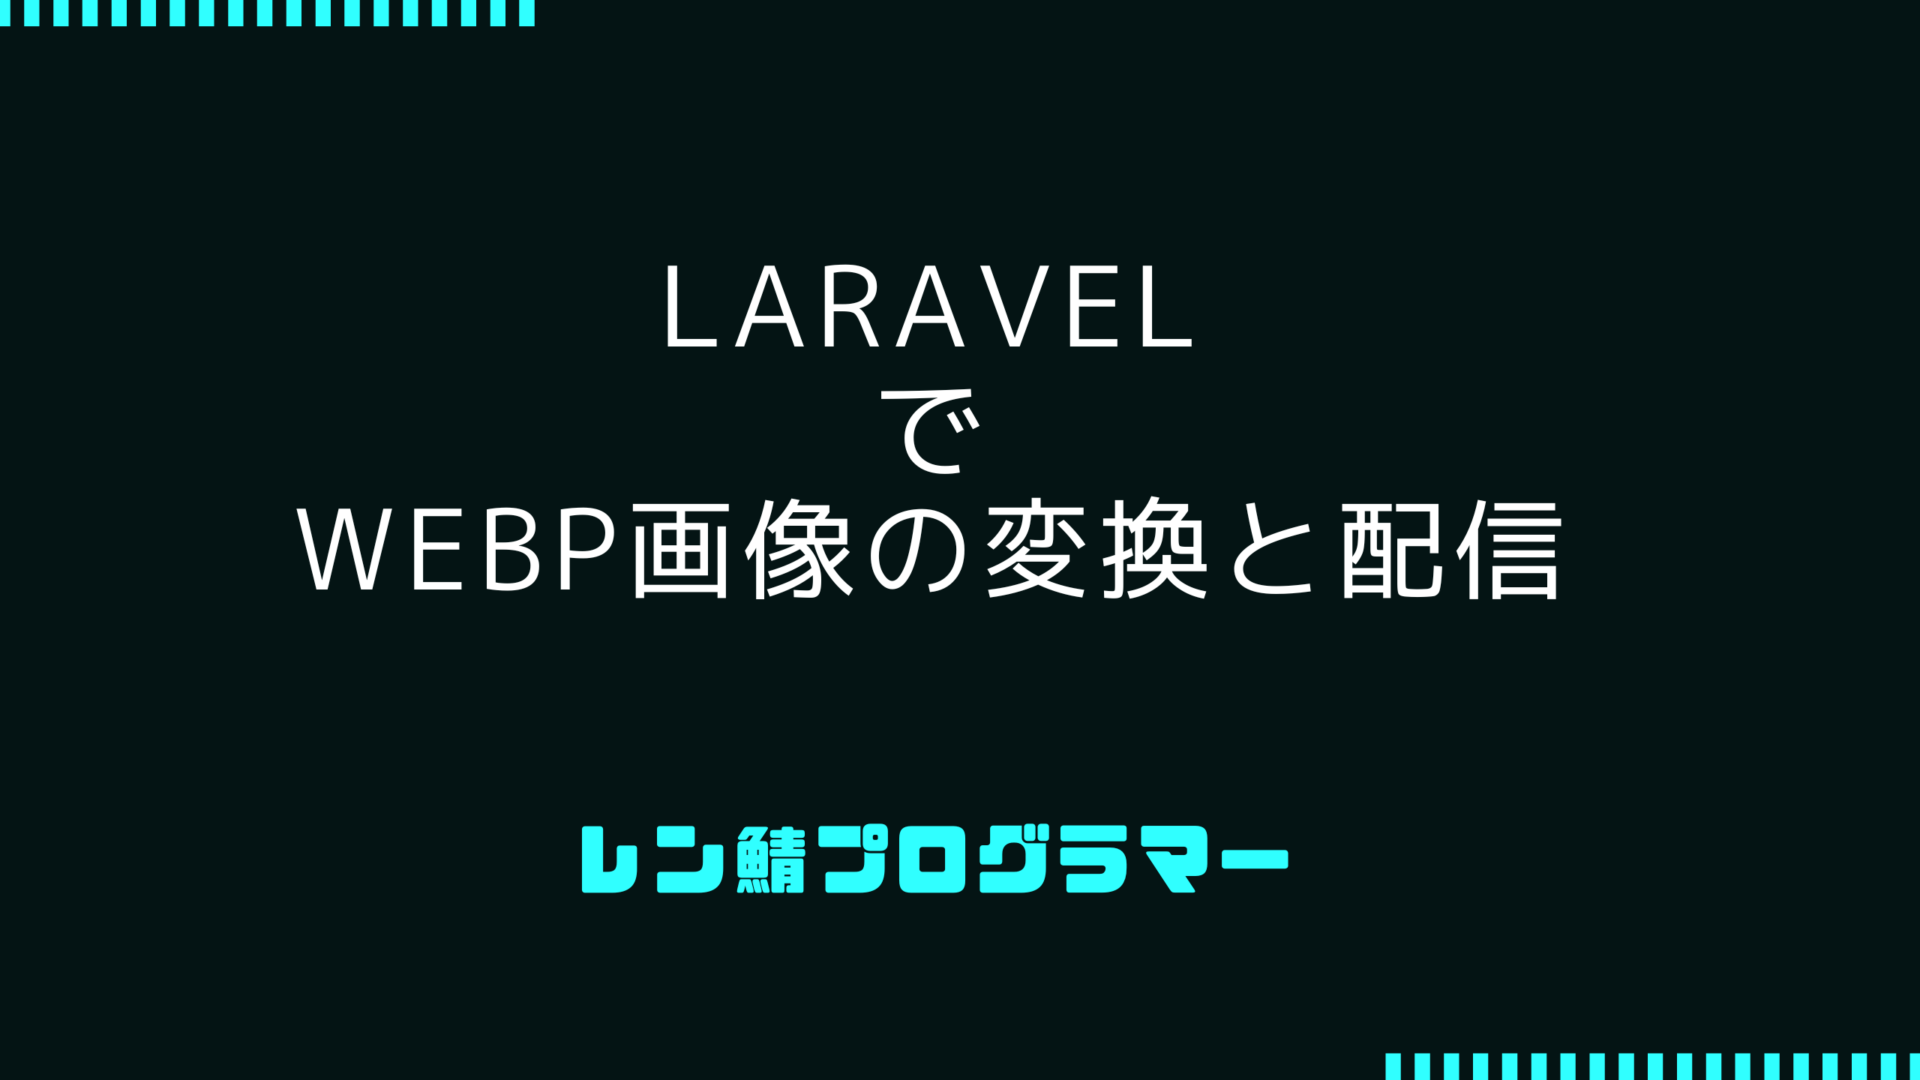 LaravelでWebP形式の画像変換や配信に対応する